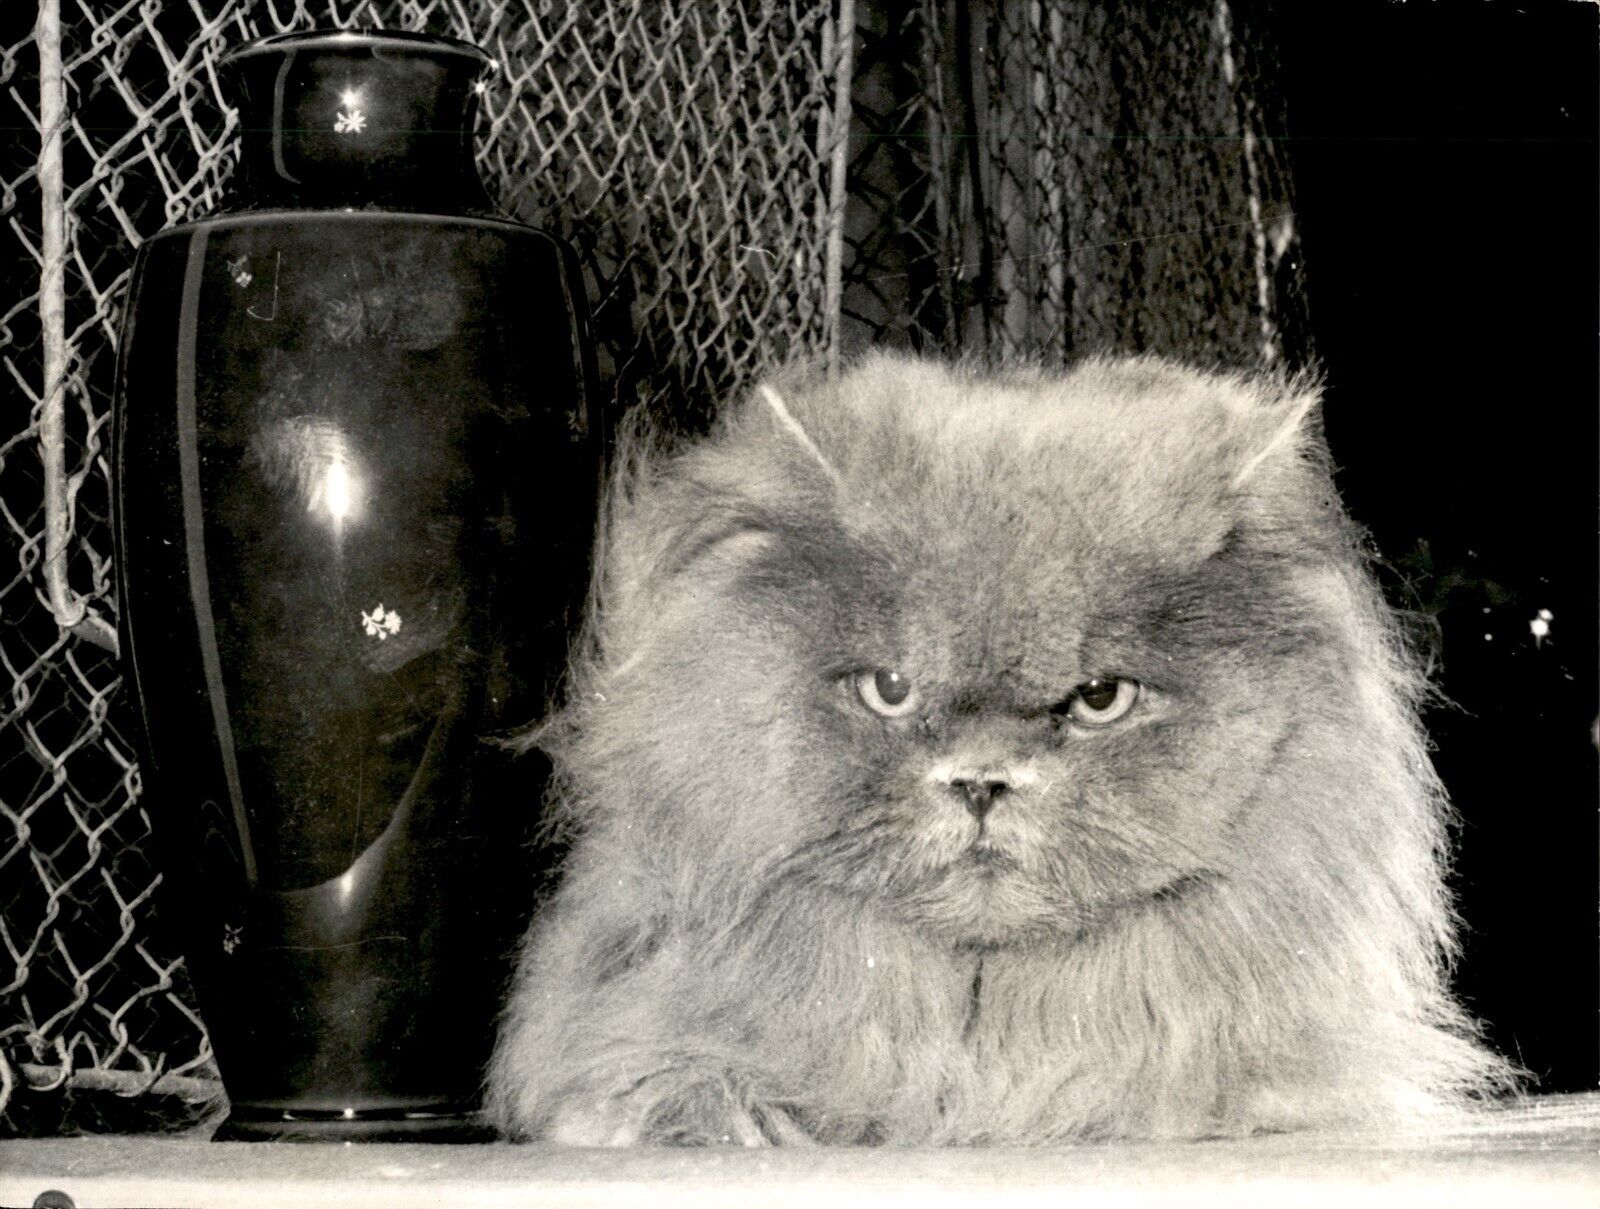 LG35 1970 Orig Photo CAT THAT STOLE SHOW 3YR BLUE PERSIAN KUILLIE DE BOIS D\'ARCY